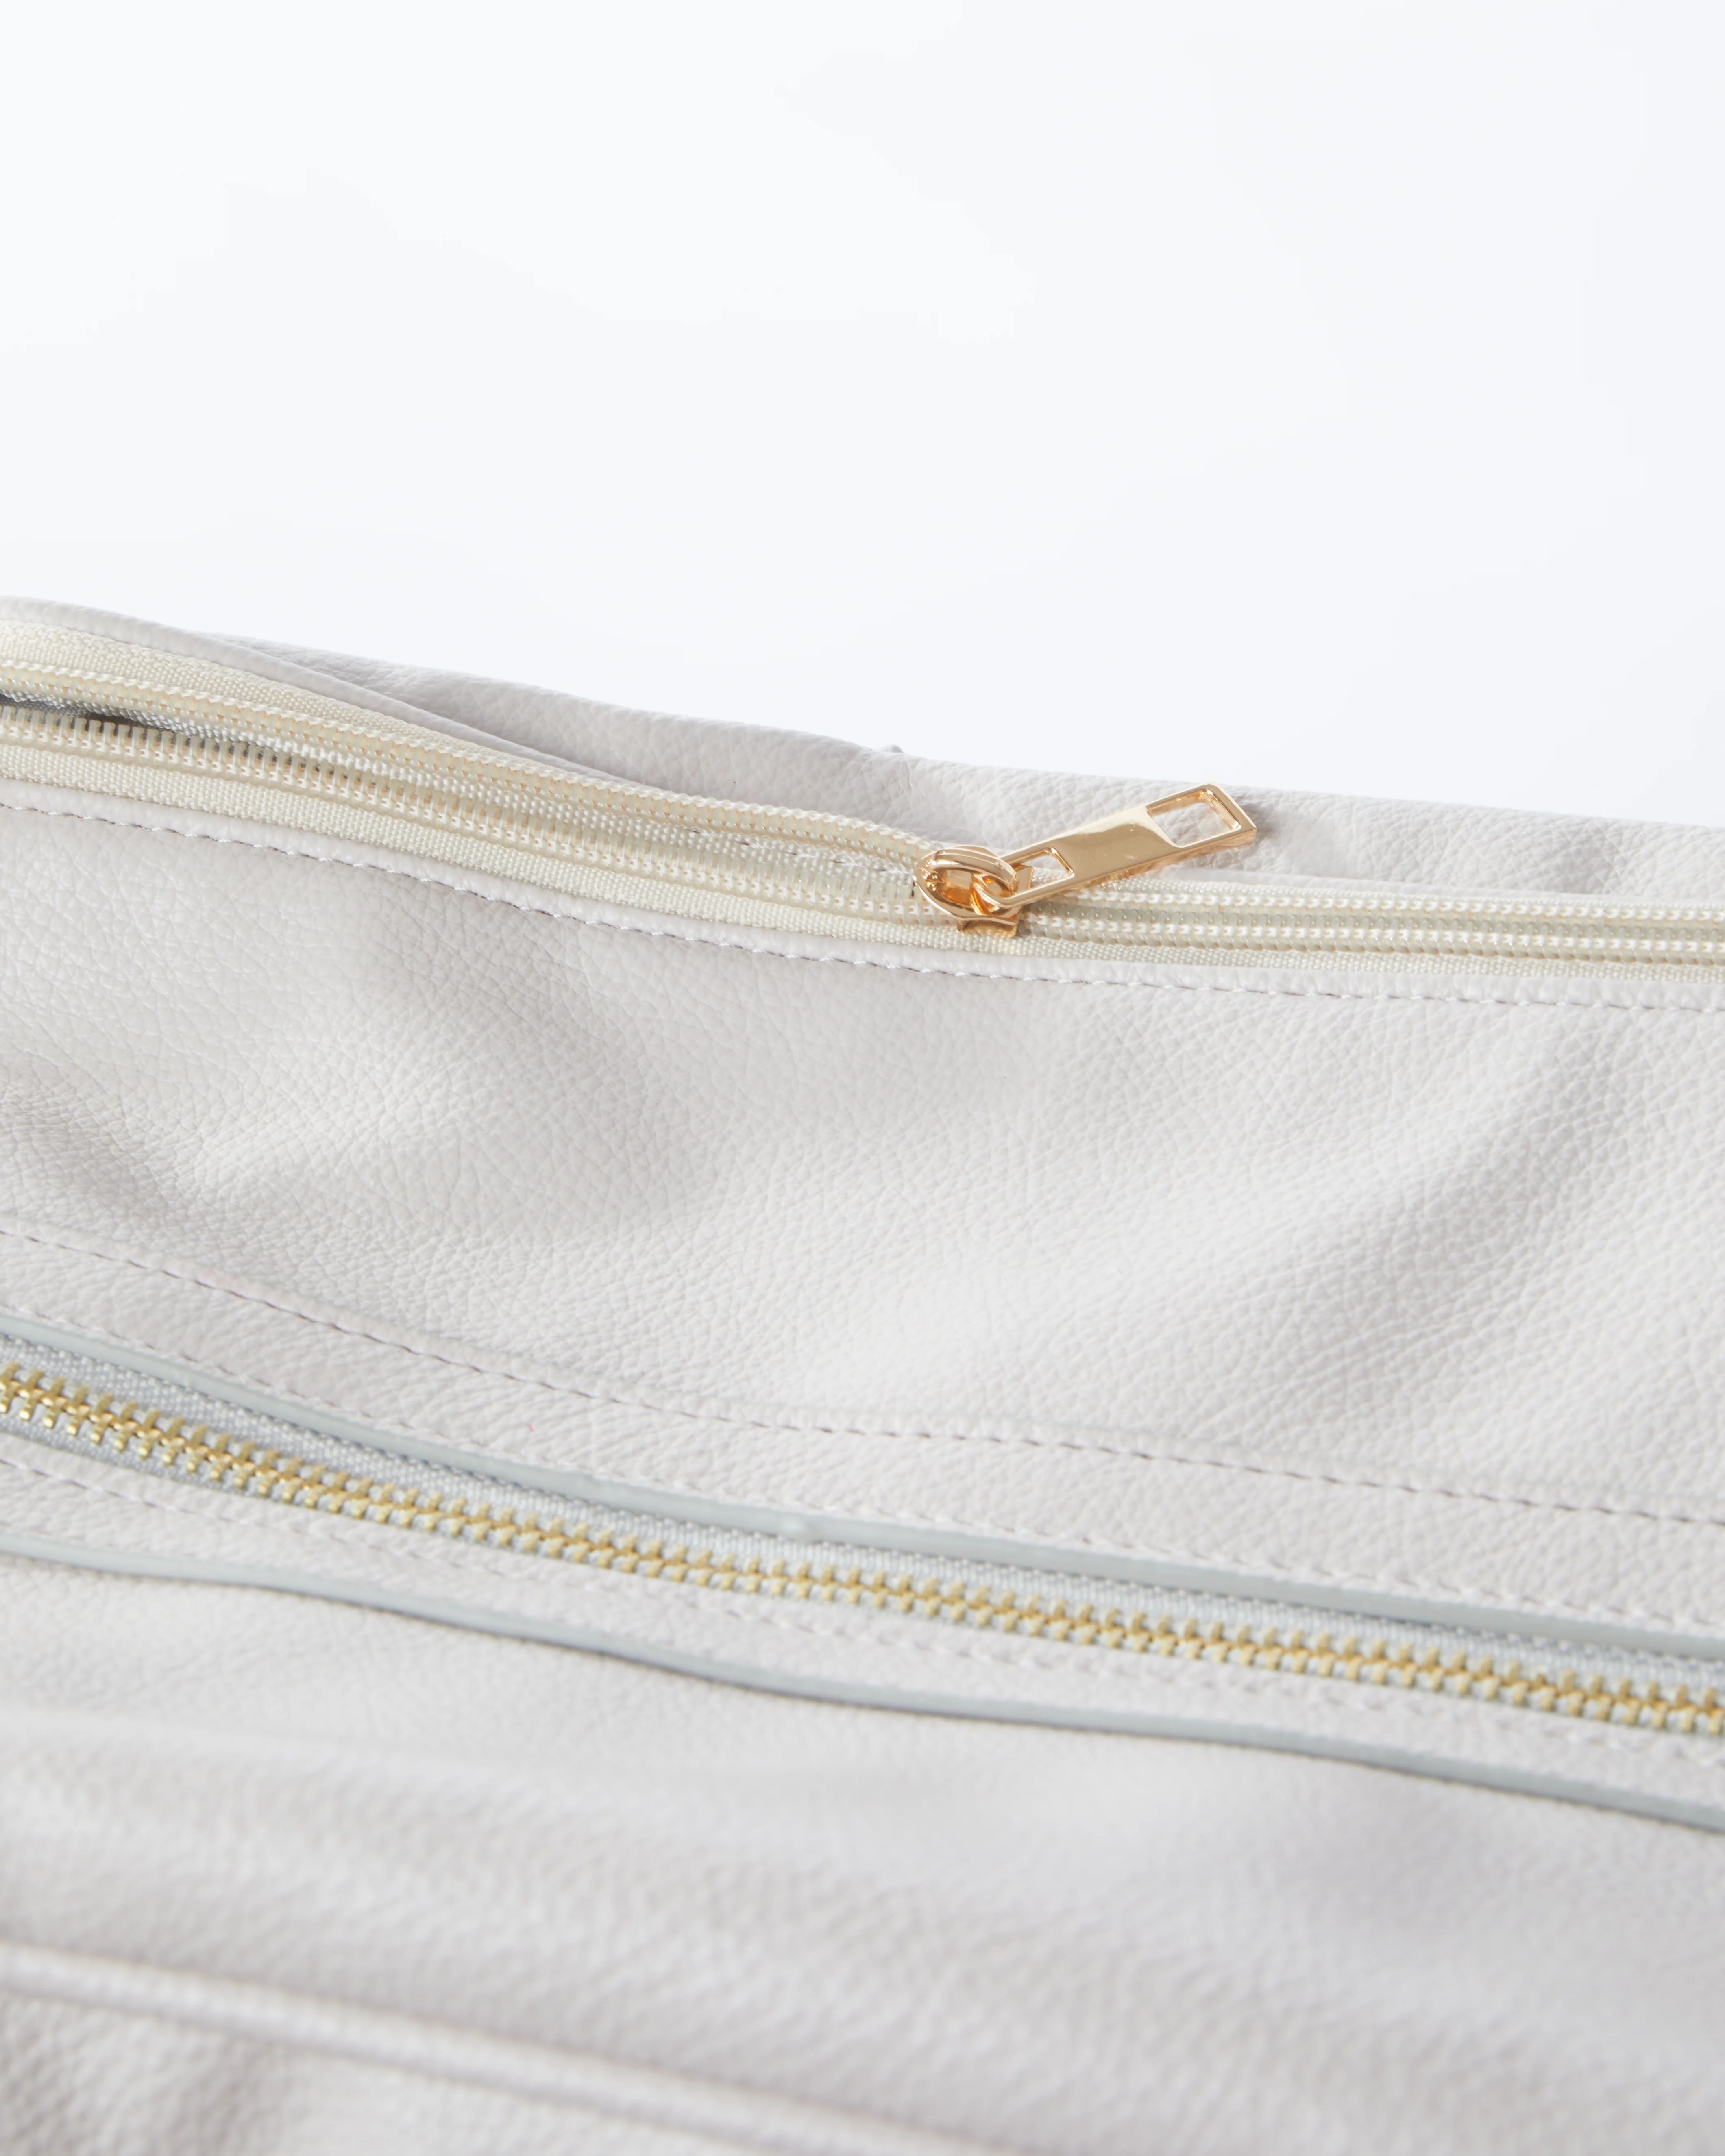 Leather Duffel Bag | KenzKustomz